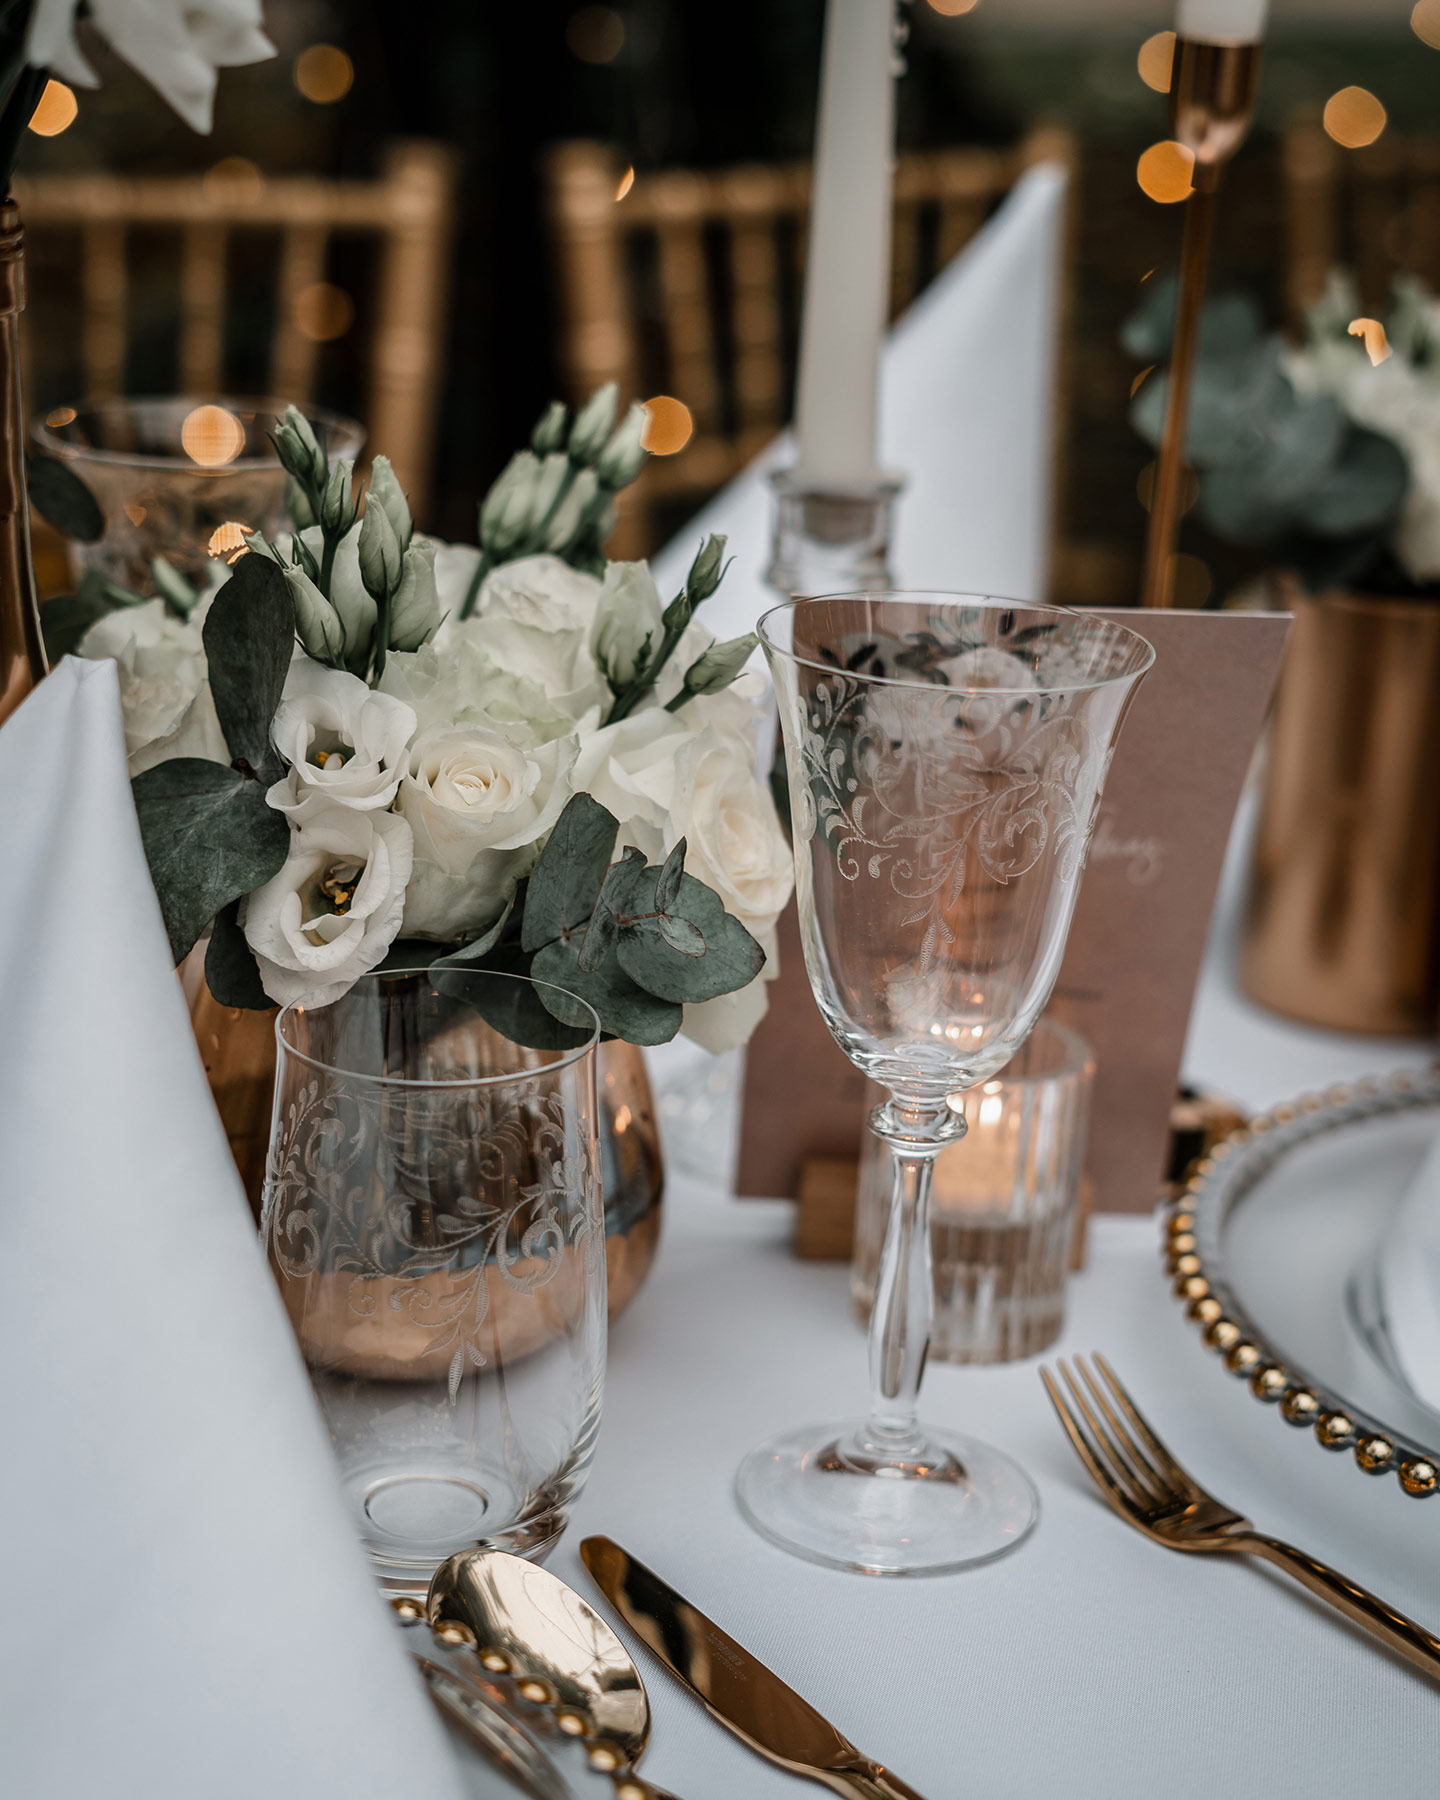 Der Hochzeitstisch wird in Detailaufnahme gezeigt: die durchsichtigen großen Teller mit Goldrand, goldenes Besteck und die Roségoldenen Vasen mit weißen Rosen und grünen Blättern geben ein schönes Bild ab. Die Papeterie passt ebenfalls zum Konzept.